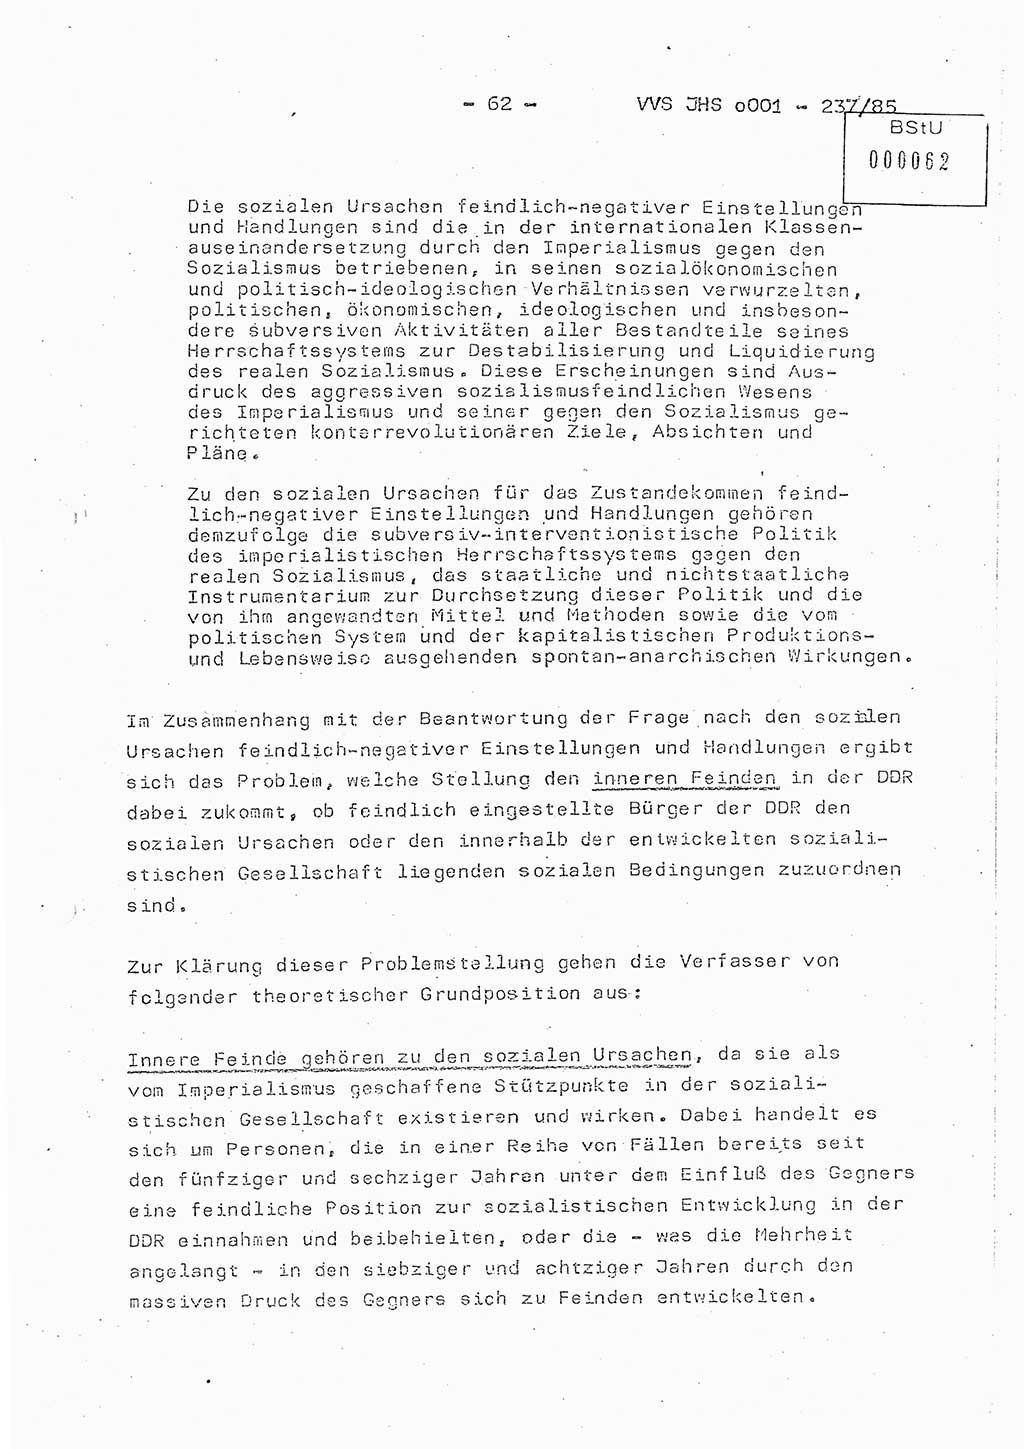 Dissertation Oberstleutnant Peter Jakulski (JHS), Oberstleutnat Christian Rudolph (HA Ⅸ), Major Horst Böttger (ZMD), Major Wolfgang Grüneberg (JHS), Major Albert Meutsch (JHS), Ministerium für Staatssicherheit (MfS) [Deutsche Demokratische Republik (DDR)], Juristische Hochschule (JHS), Vertrauliche Verschlußsache (VVS) o001-237/85, Potsdam 1985, Seite 62 (Diss. MfS DDR JHS VVS o001-237/85 1985, S. 62)